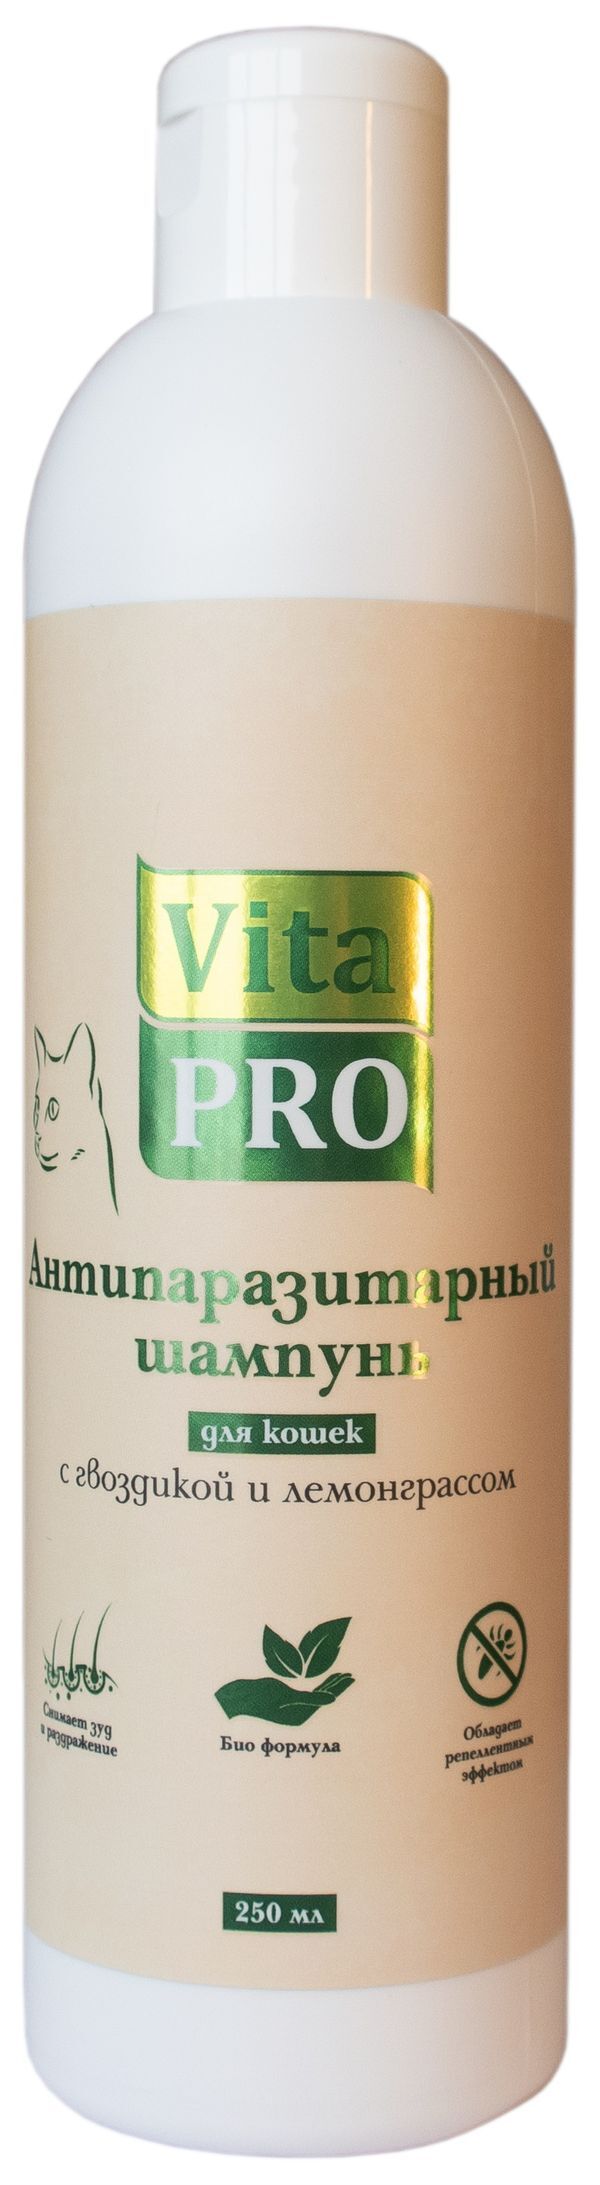 Vita Pro 250 мл биошампунь для кошек антипаразитарный с гвоздикой и лемонграссом 1х15